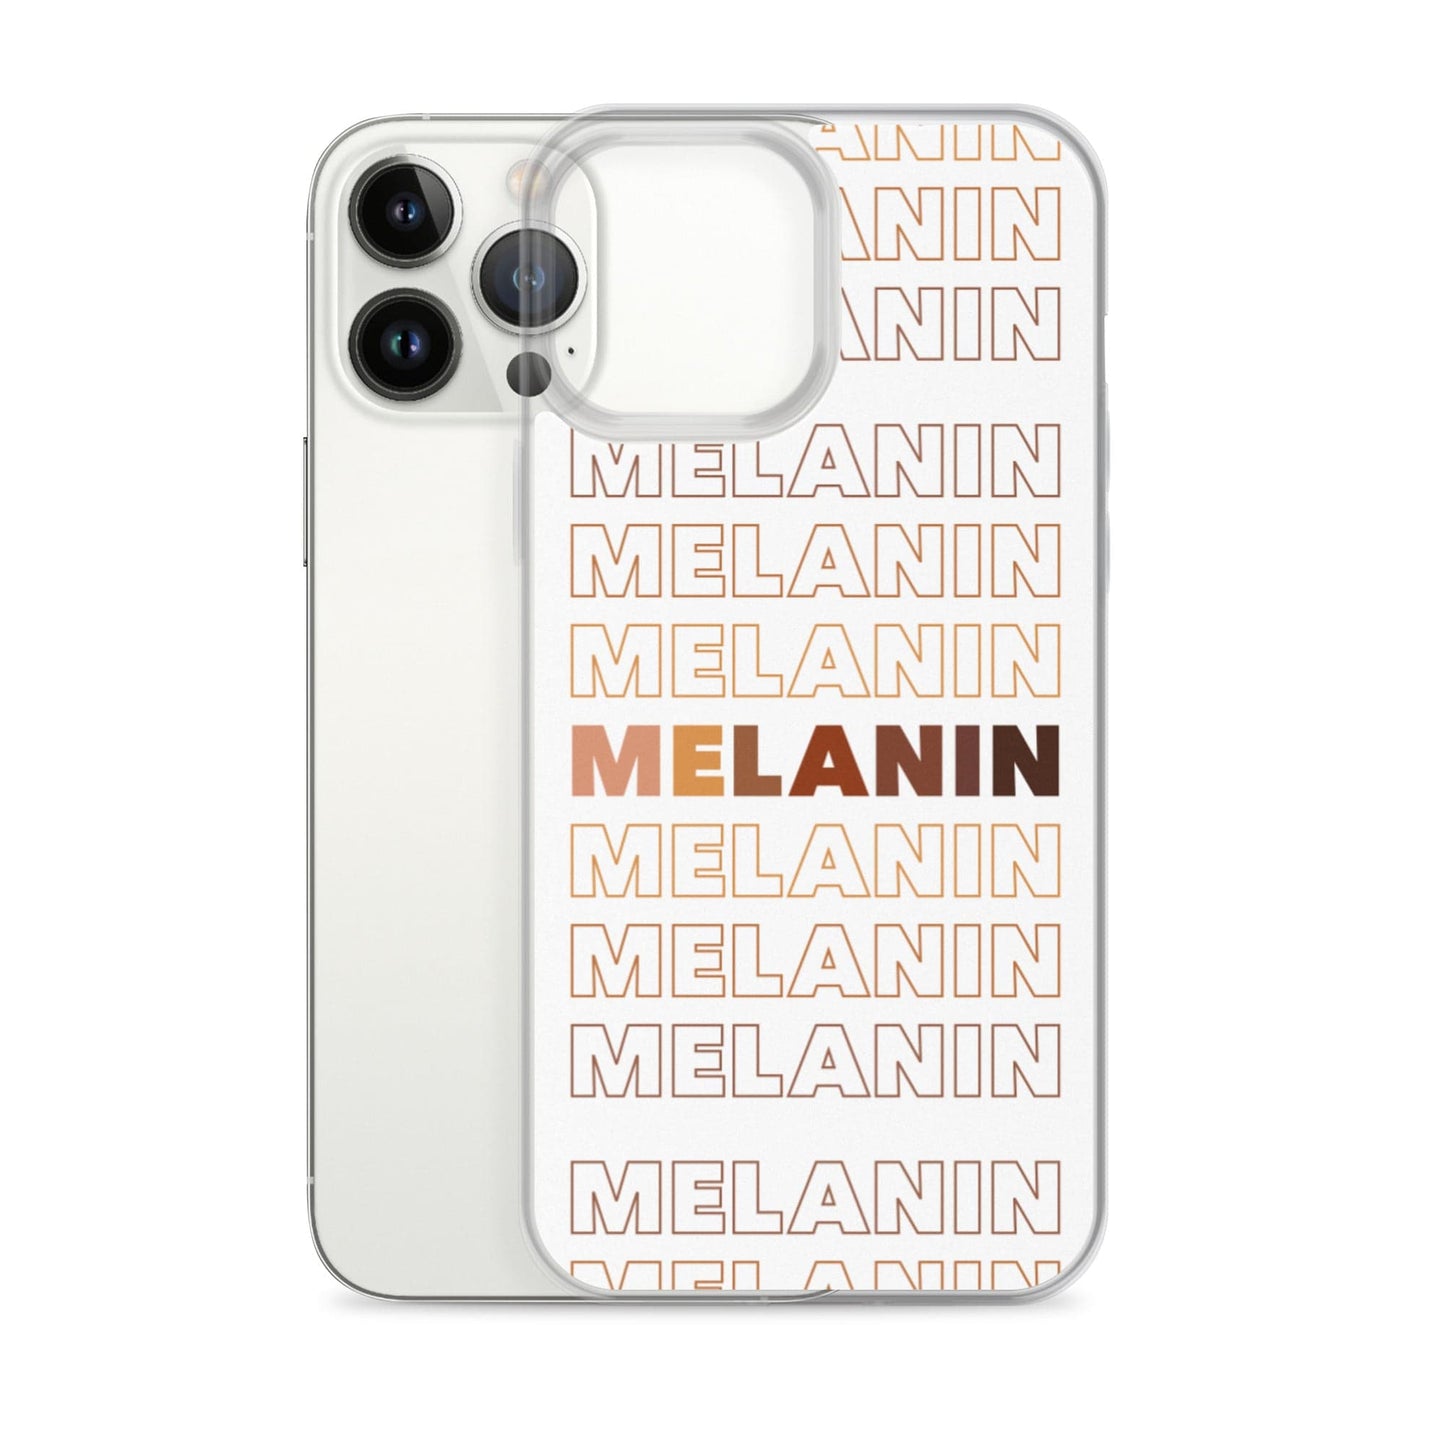 Melanin - Iphone Case